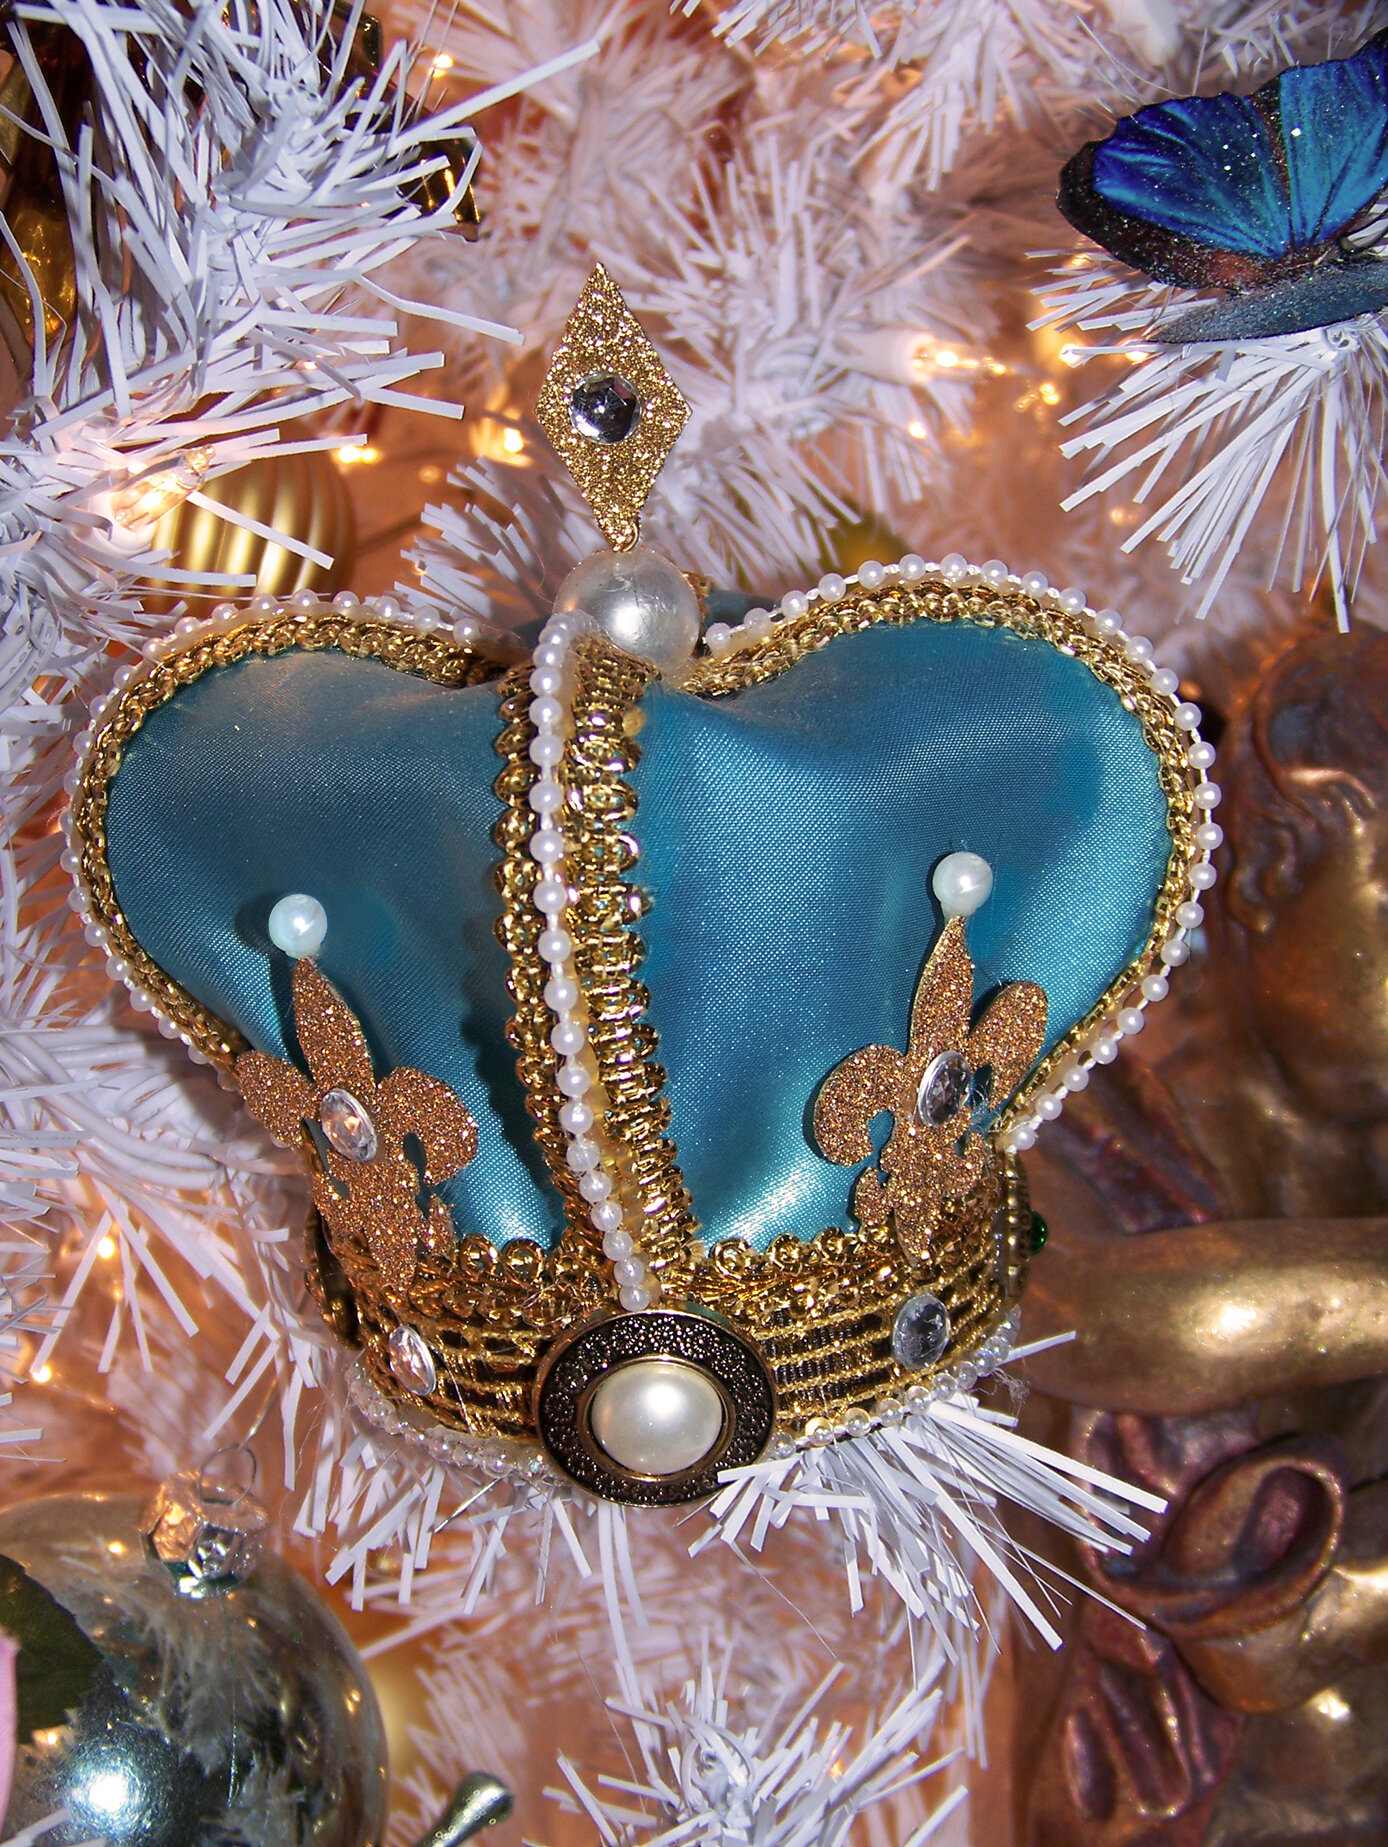  Marie Antoinette crown ornament 